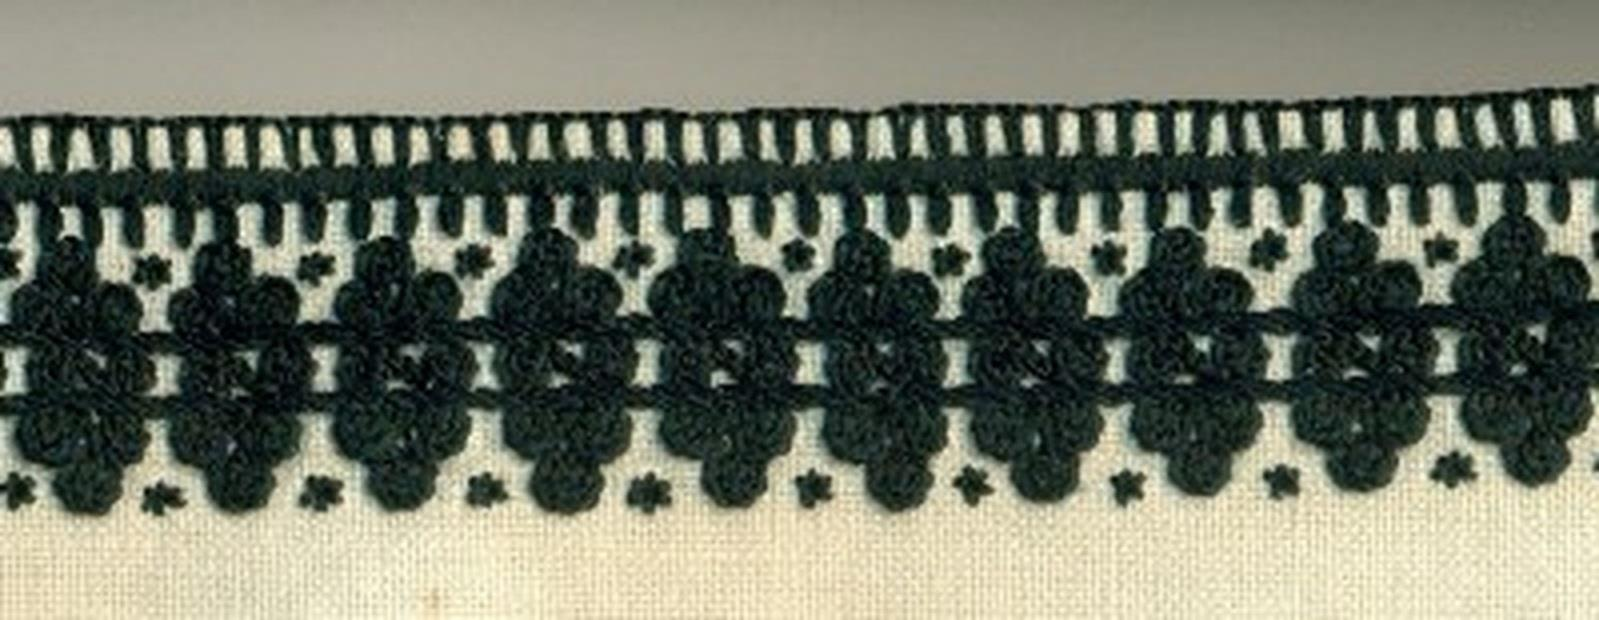 Szlaki haftu w strojach krzczonowskich układały się w formie poziomych pasów umieszczonych równolegle do zdobionej krawędzi.